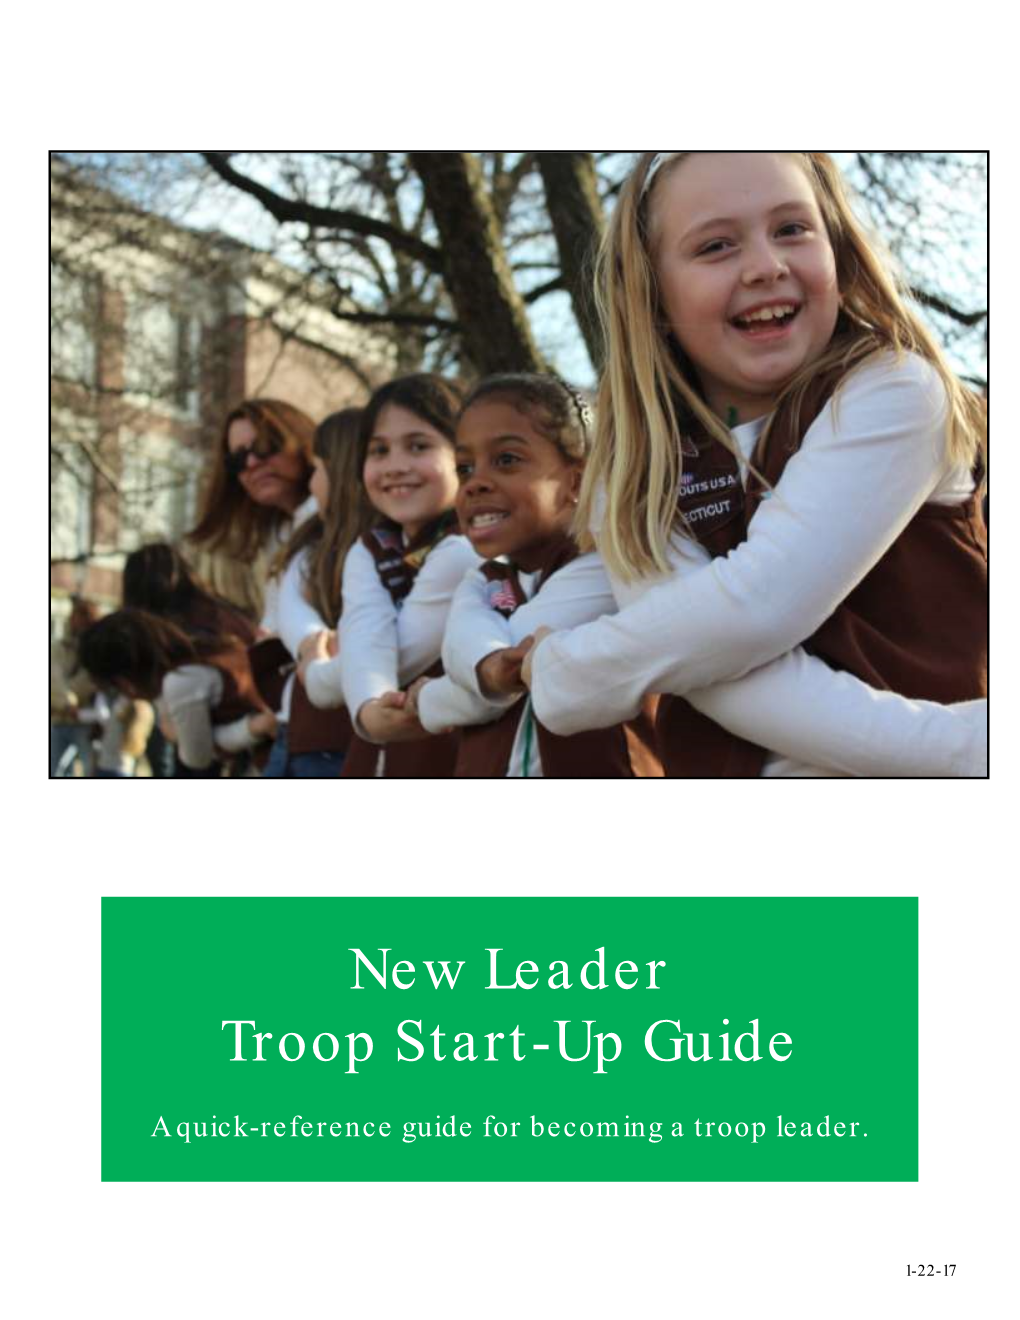 New Leader Troop Start-Up Guide